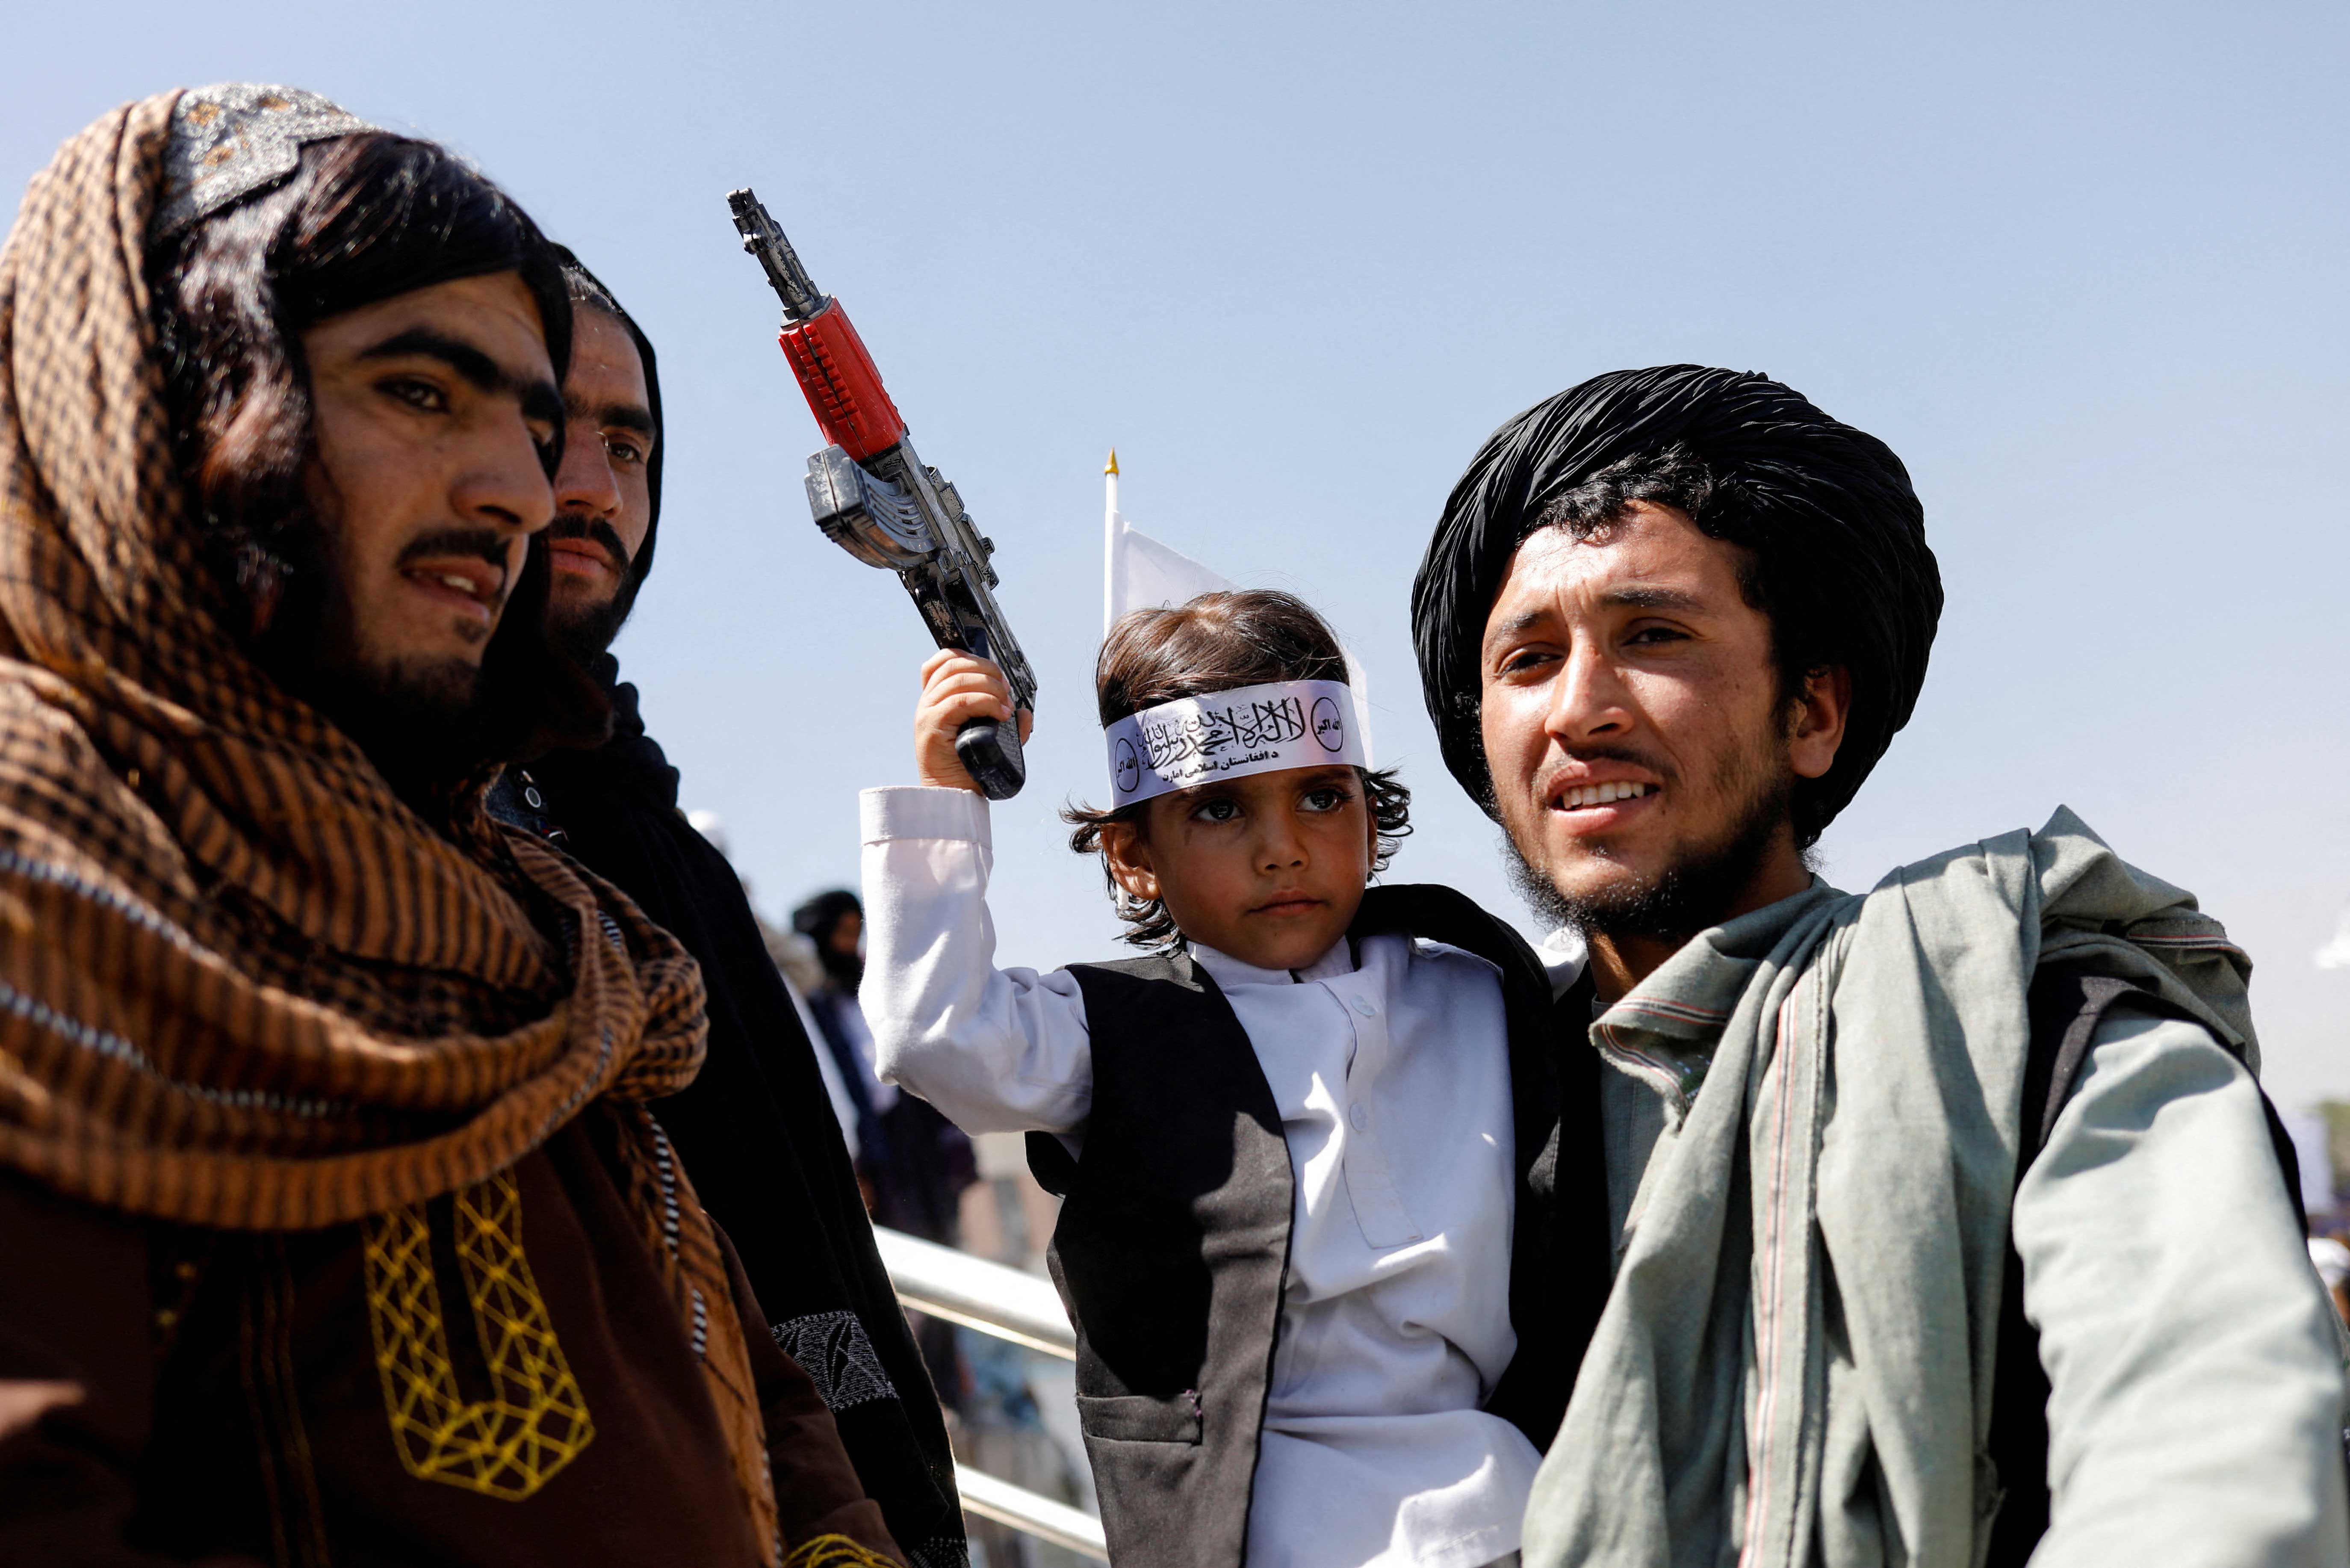 В Афганистане оформляется диктатура религиозного ордена